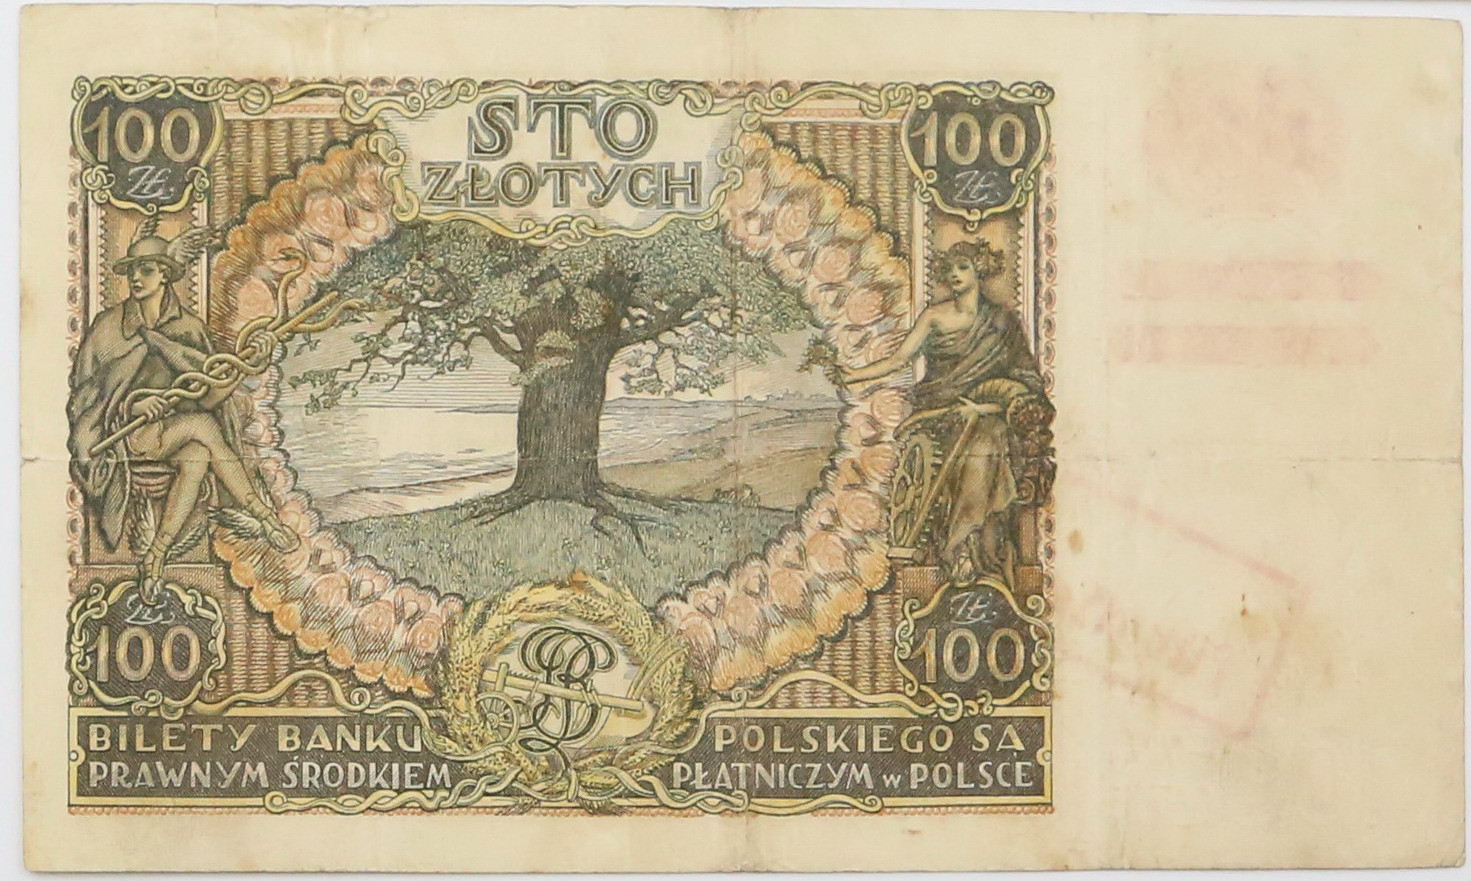 100 złotych 1934 seria CO - fałszywy nadruk